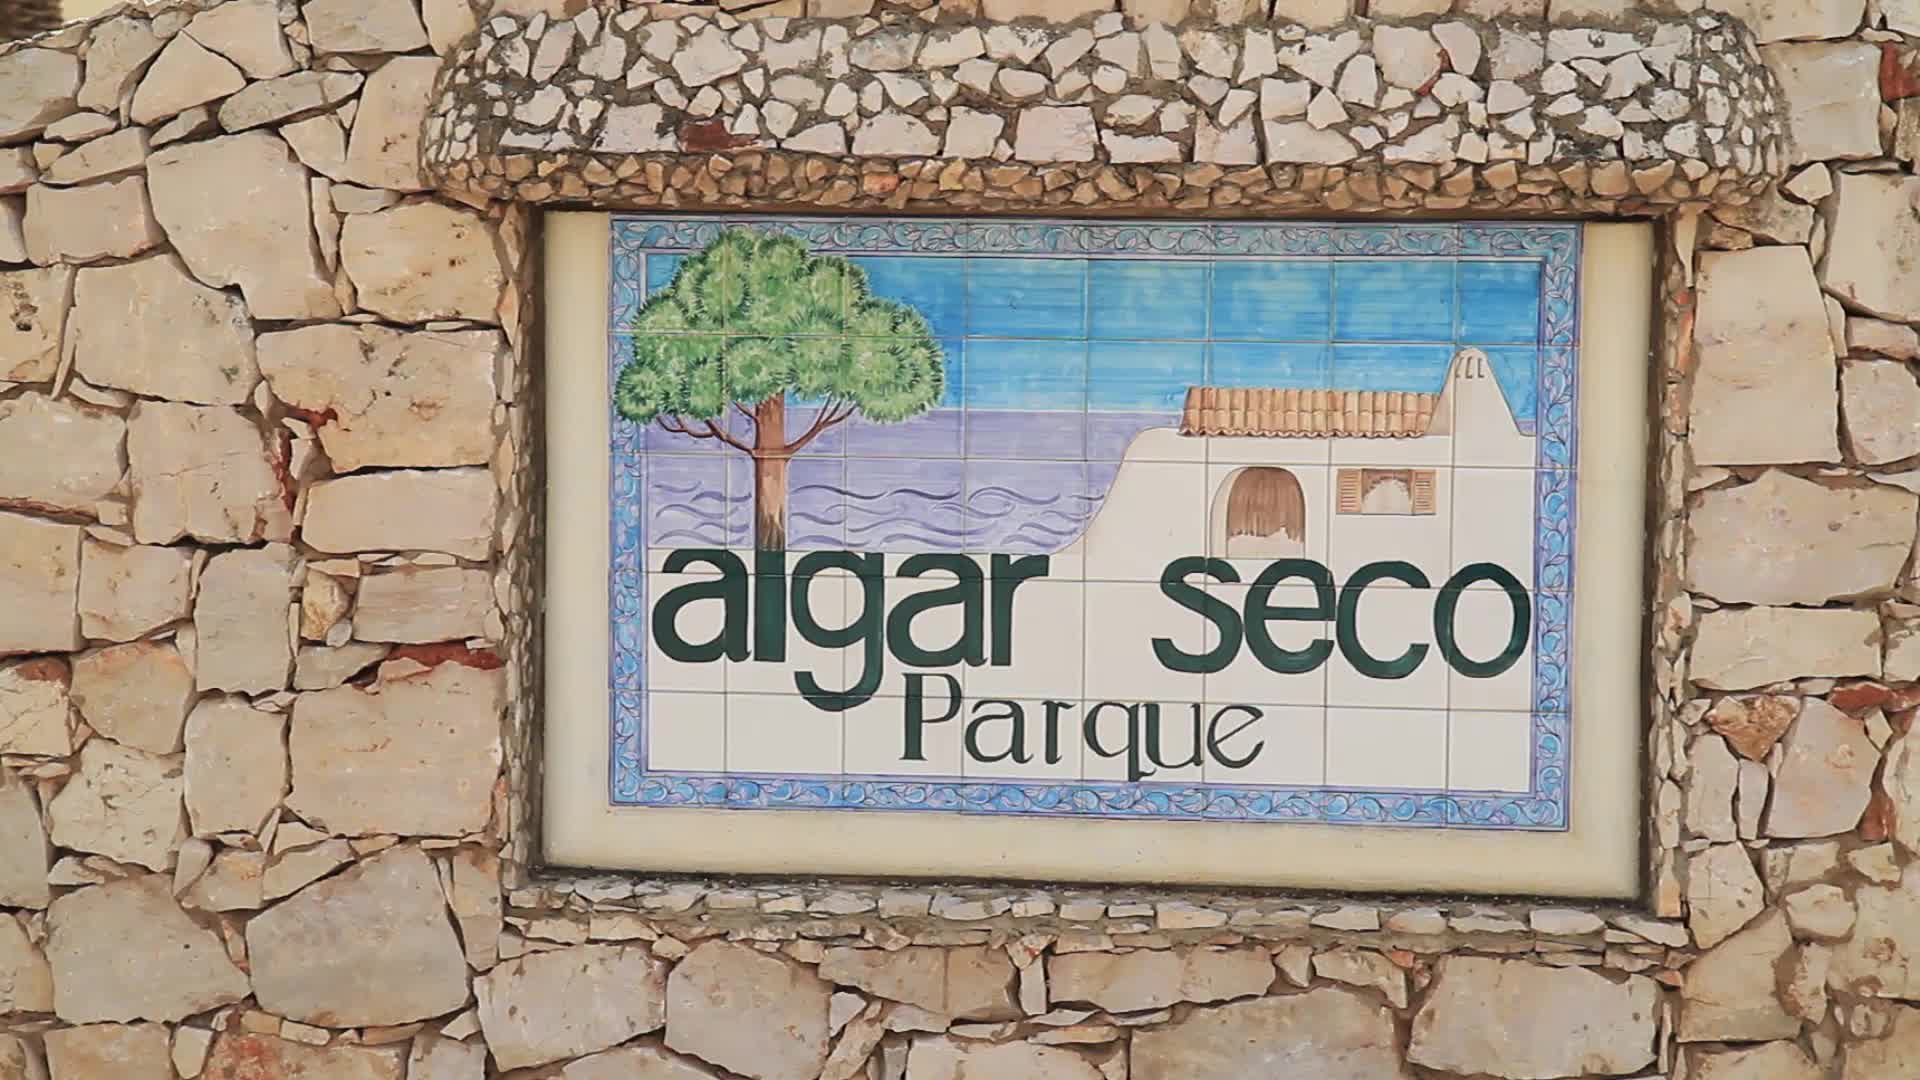 Algar Seco Parque